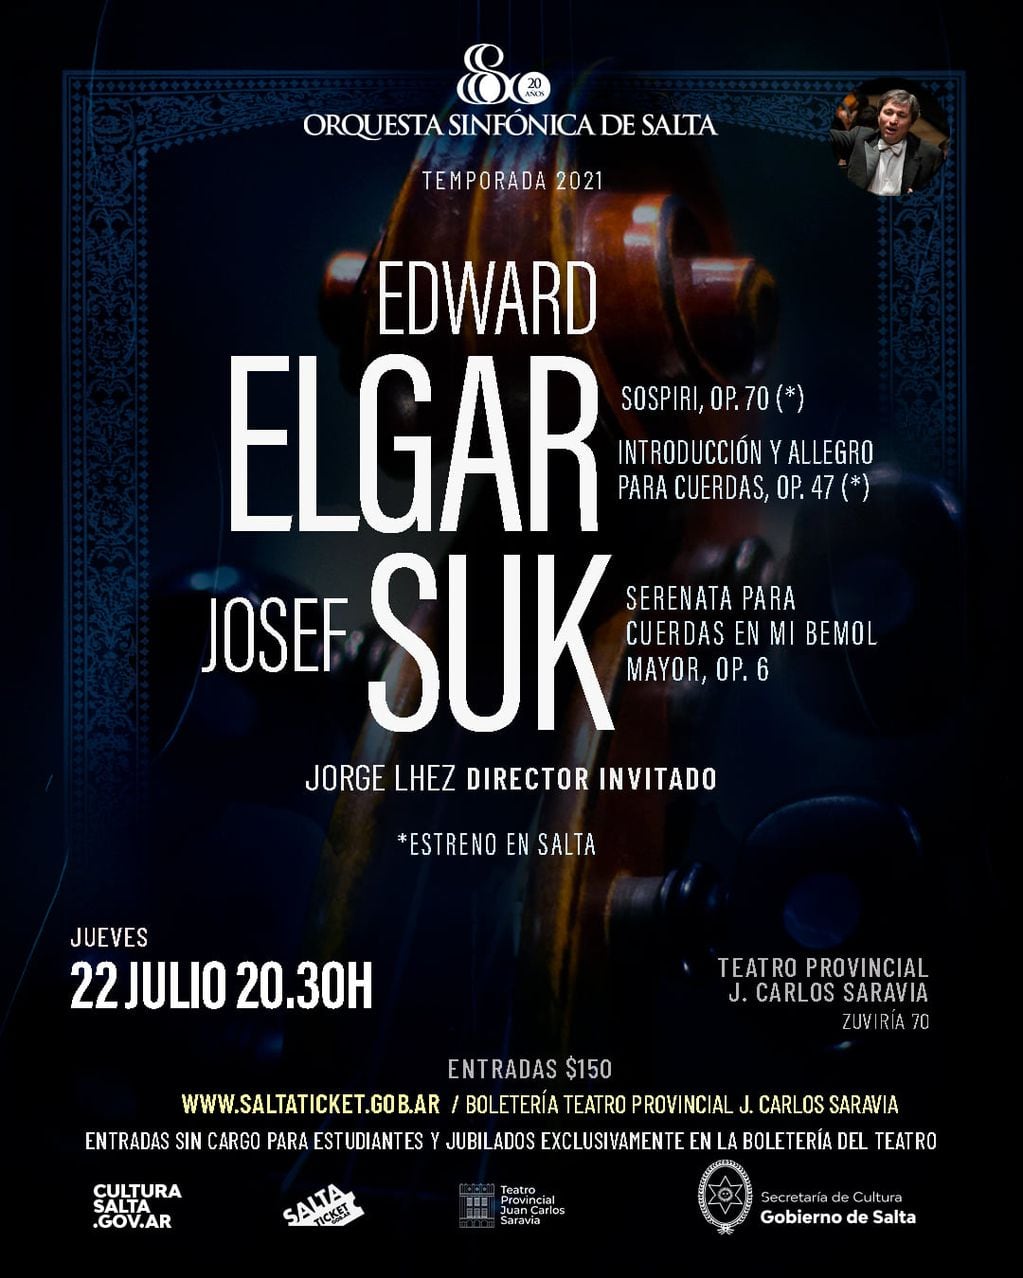 El concierto es este jueves 22 a las 20.30 en el Teatro Provincial.